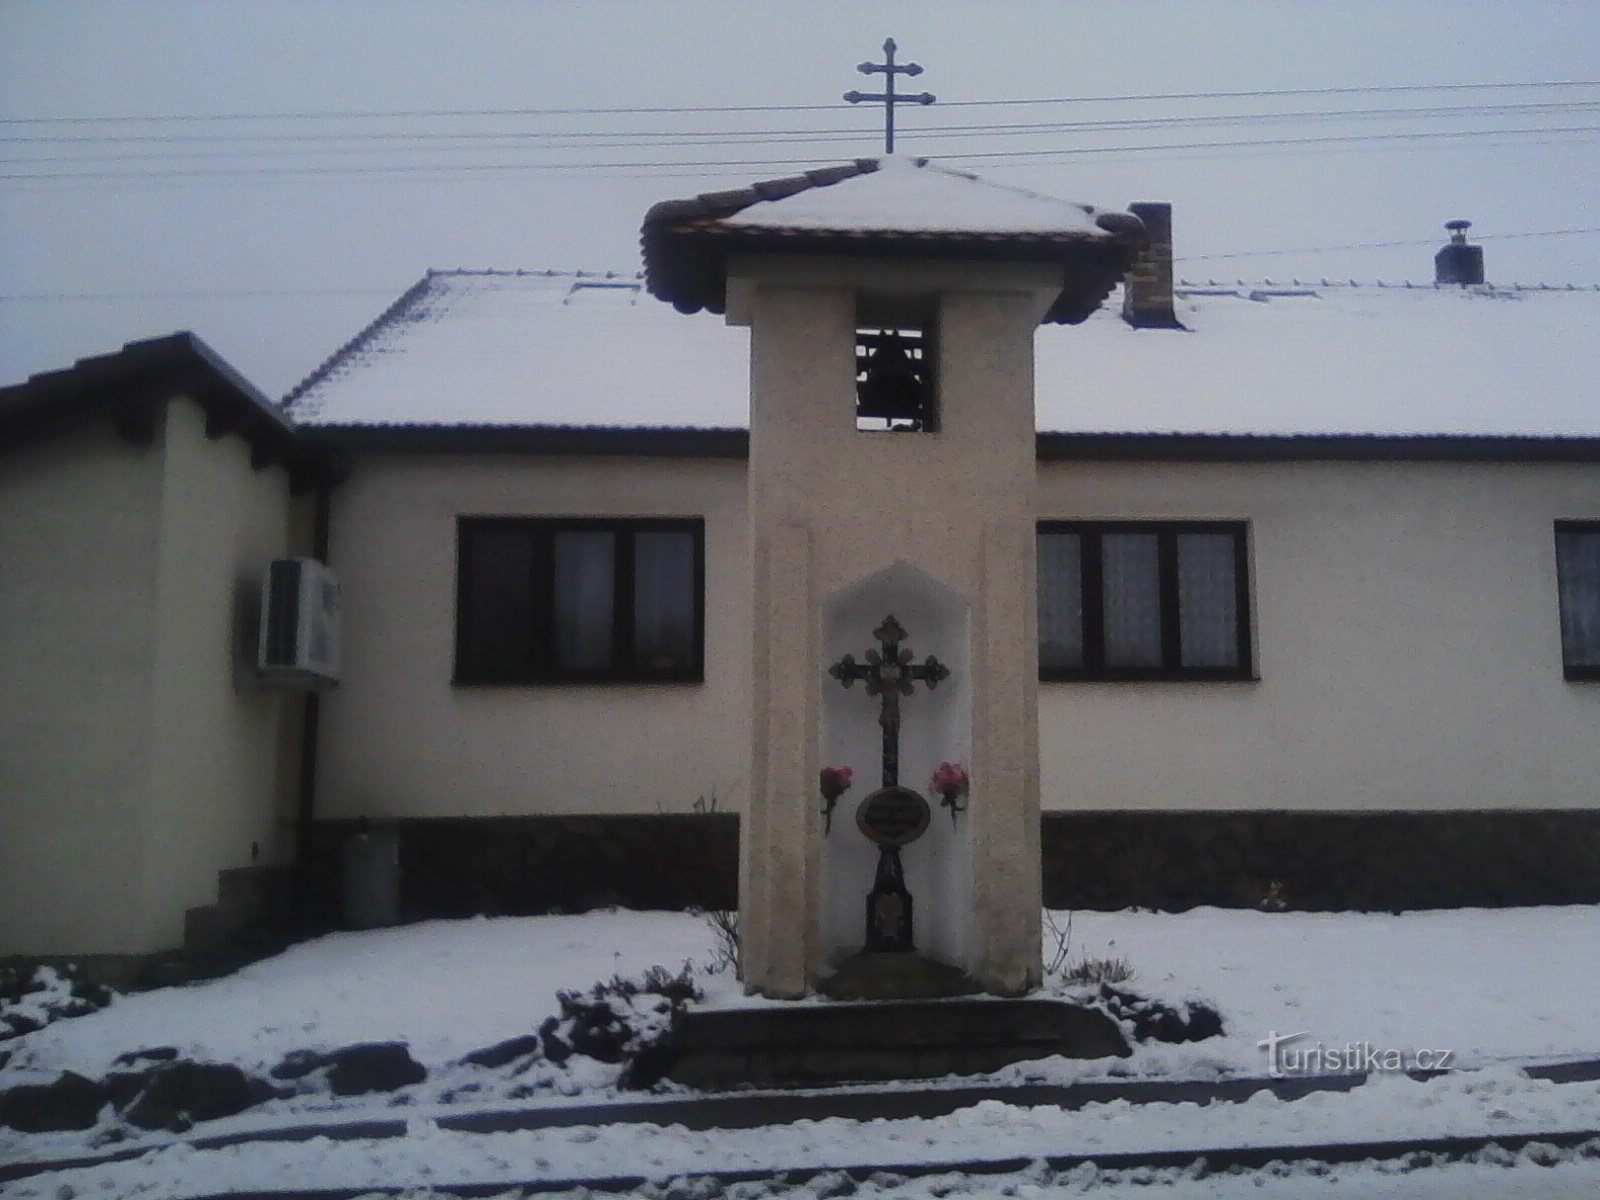 2. Zajíčkov - tháp chuông thích hợp với cây thánh giá.